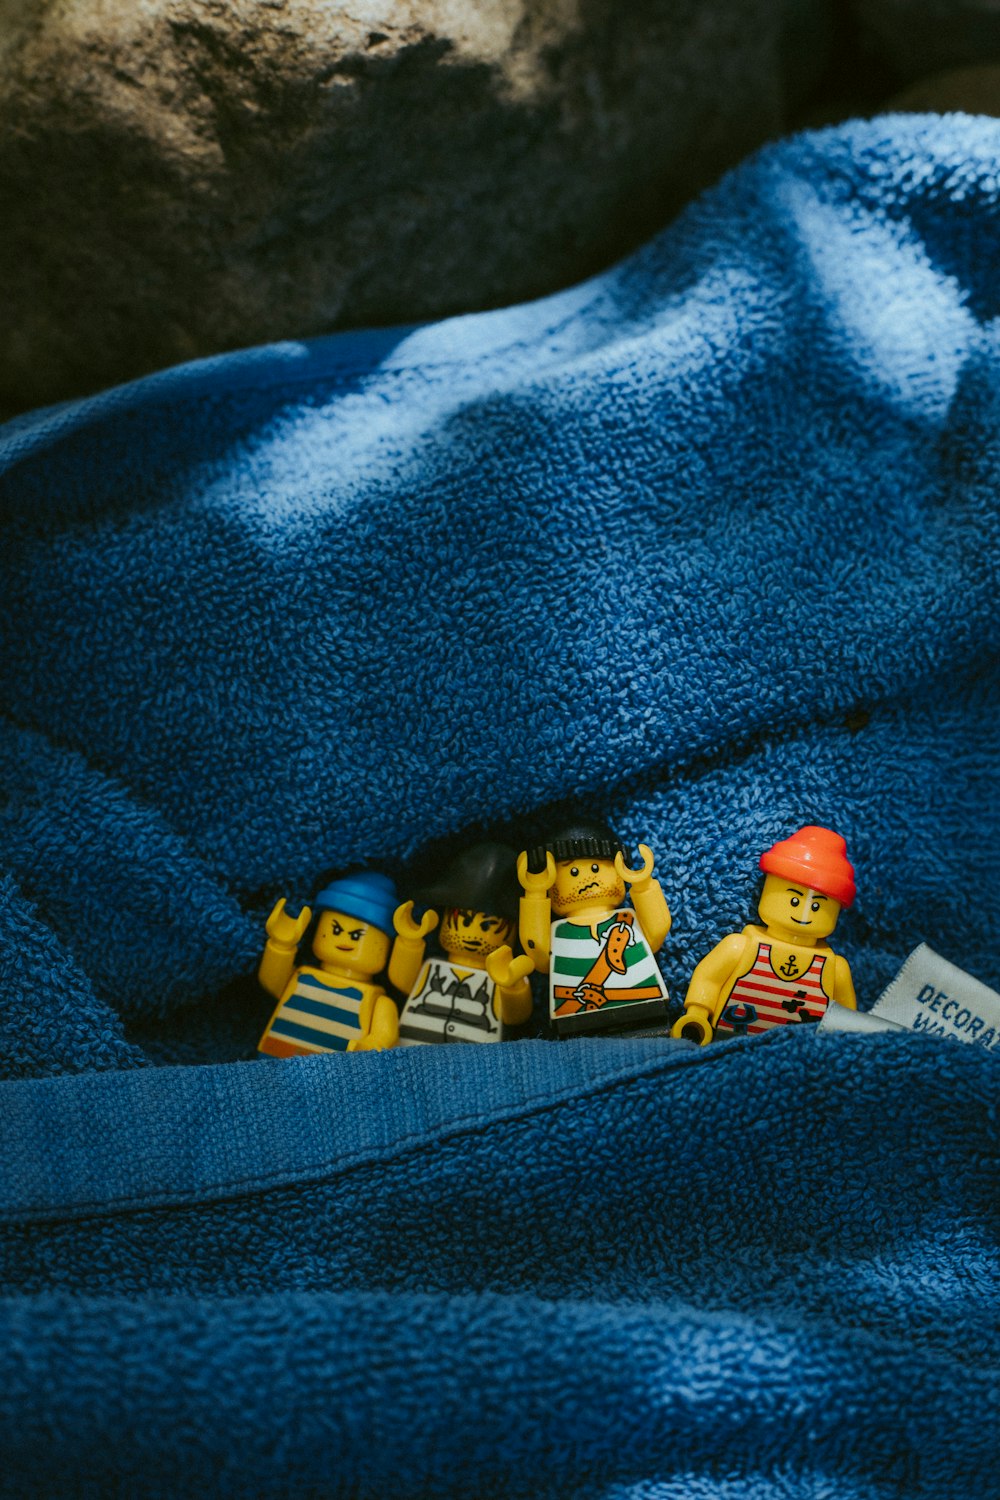 LEGO Mini Figur auf blauem Textil